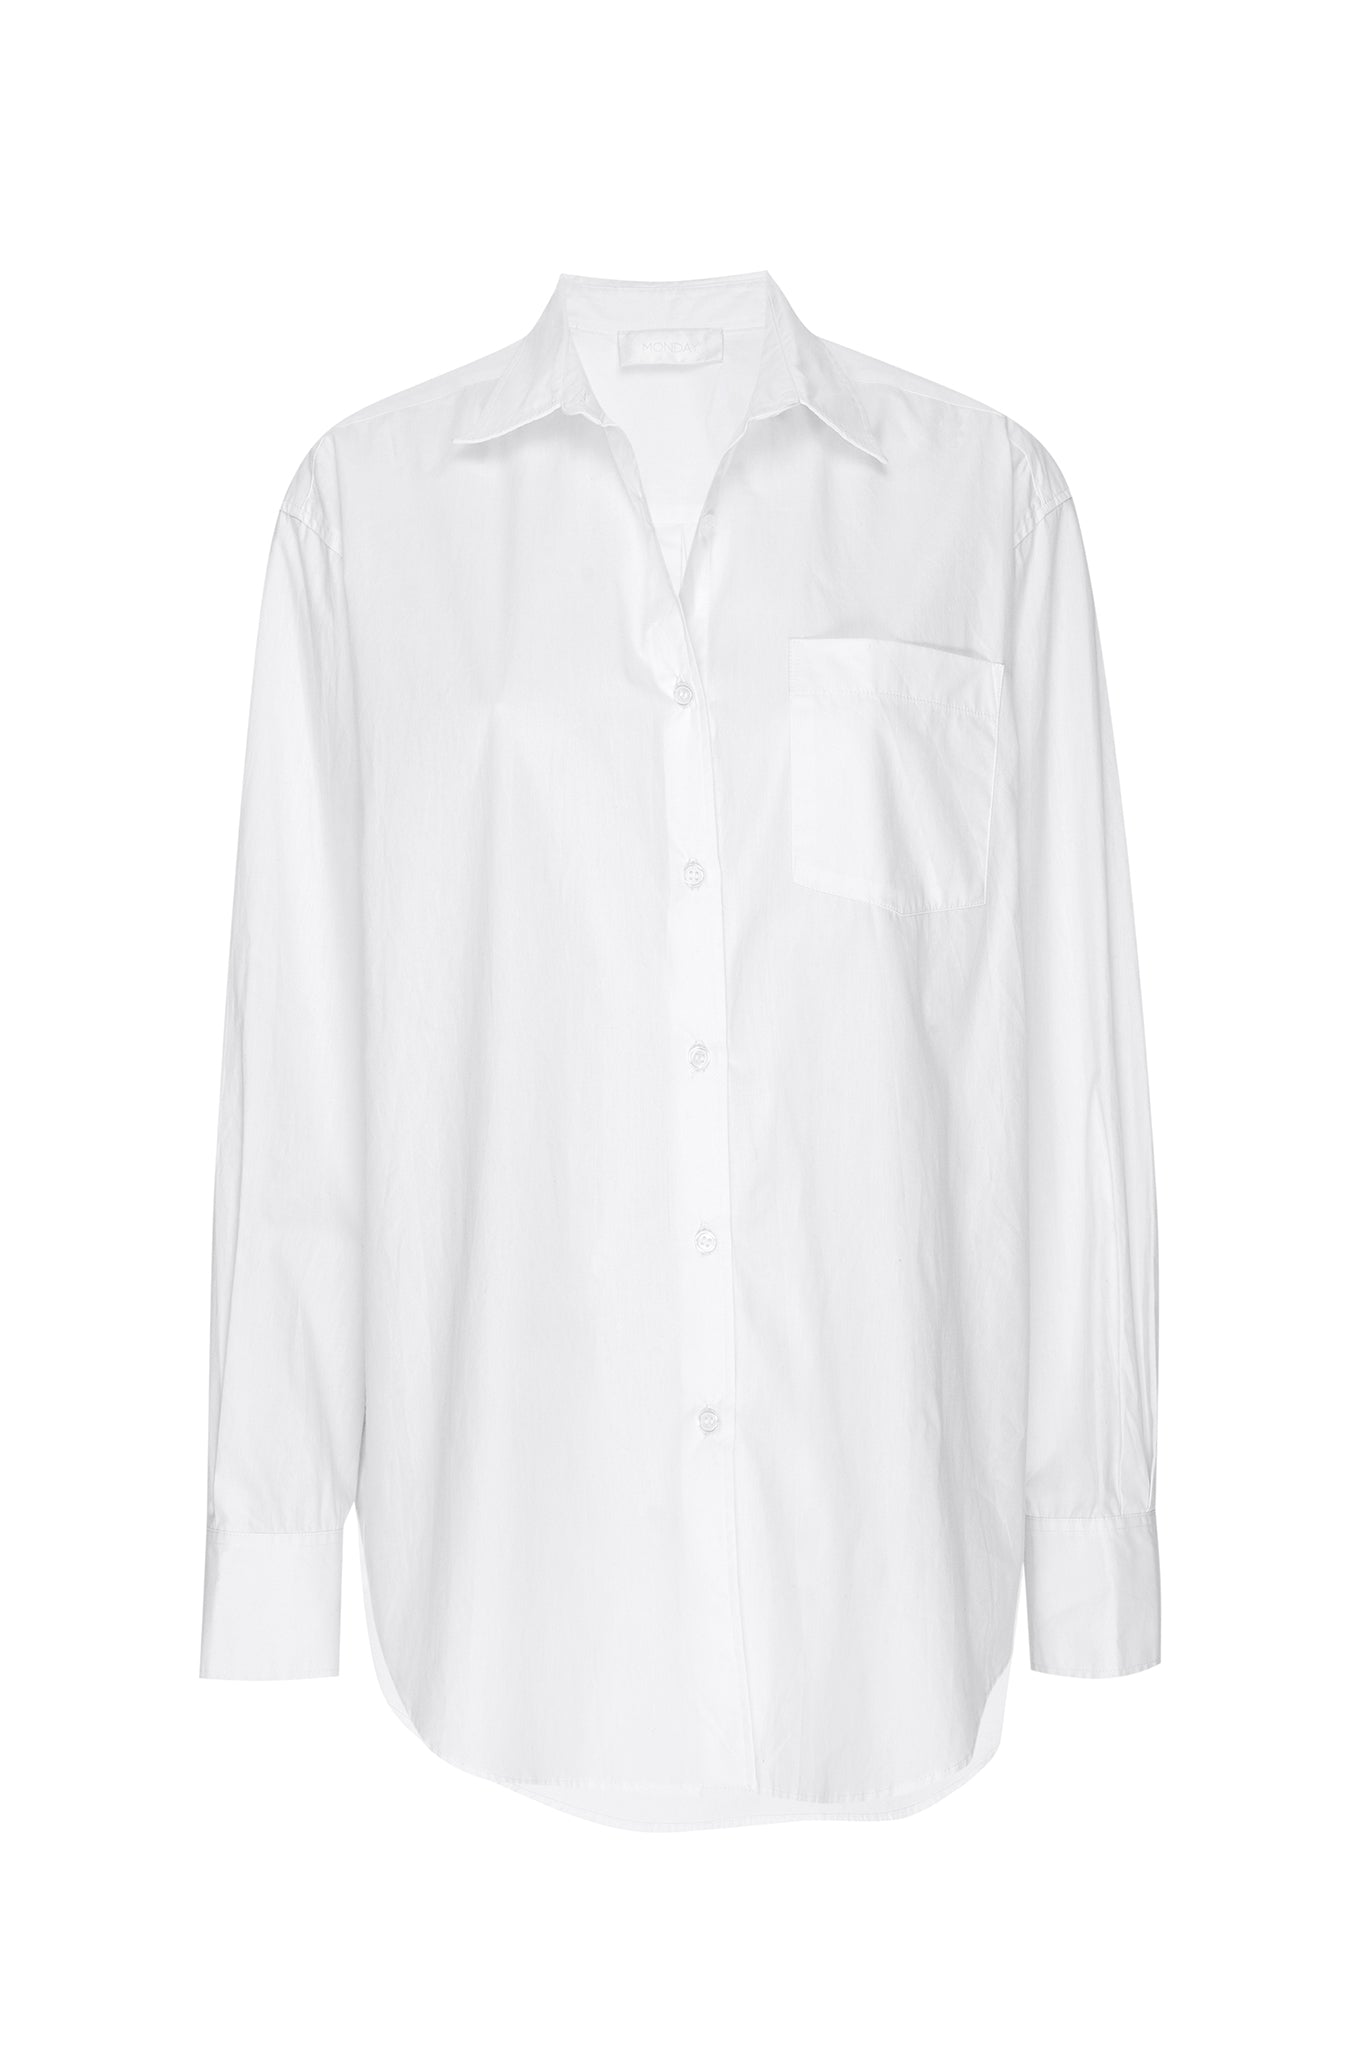 La Jolla Shirt - White – Monday Swimwear